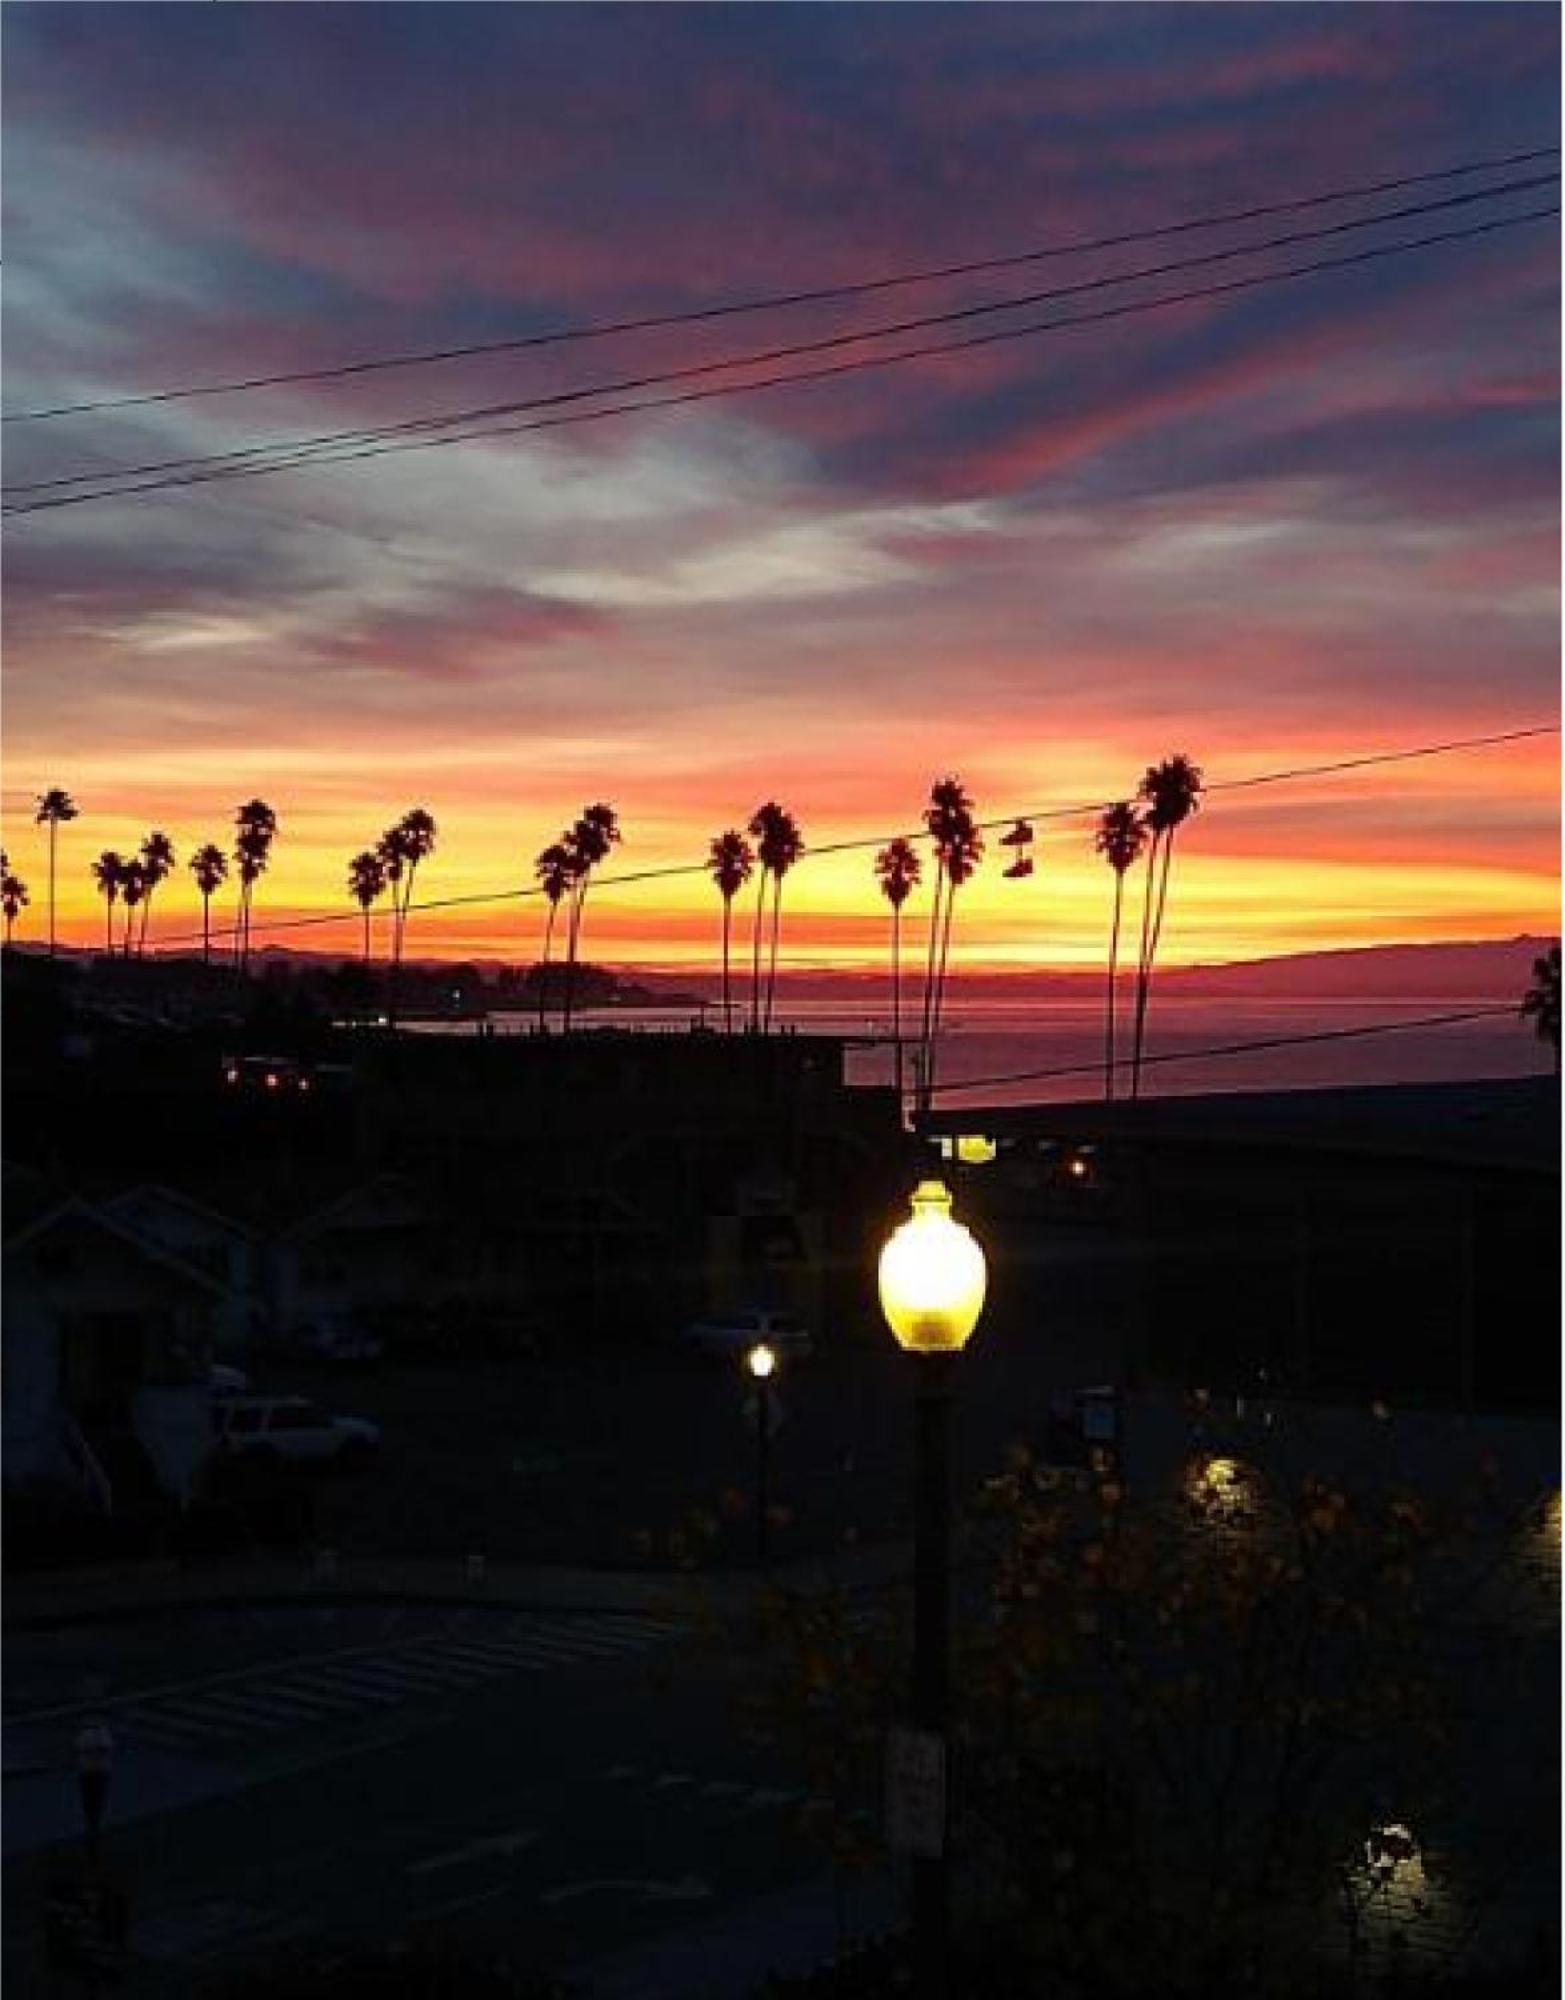 Howard Johnson By Wyndham Santa Cruz Beach Boardwalk Экстерьер фото